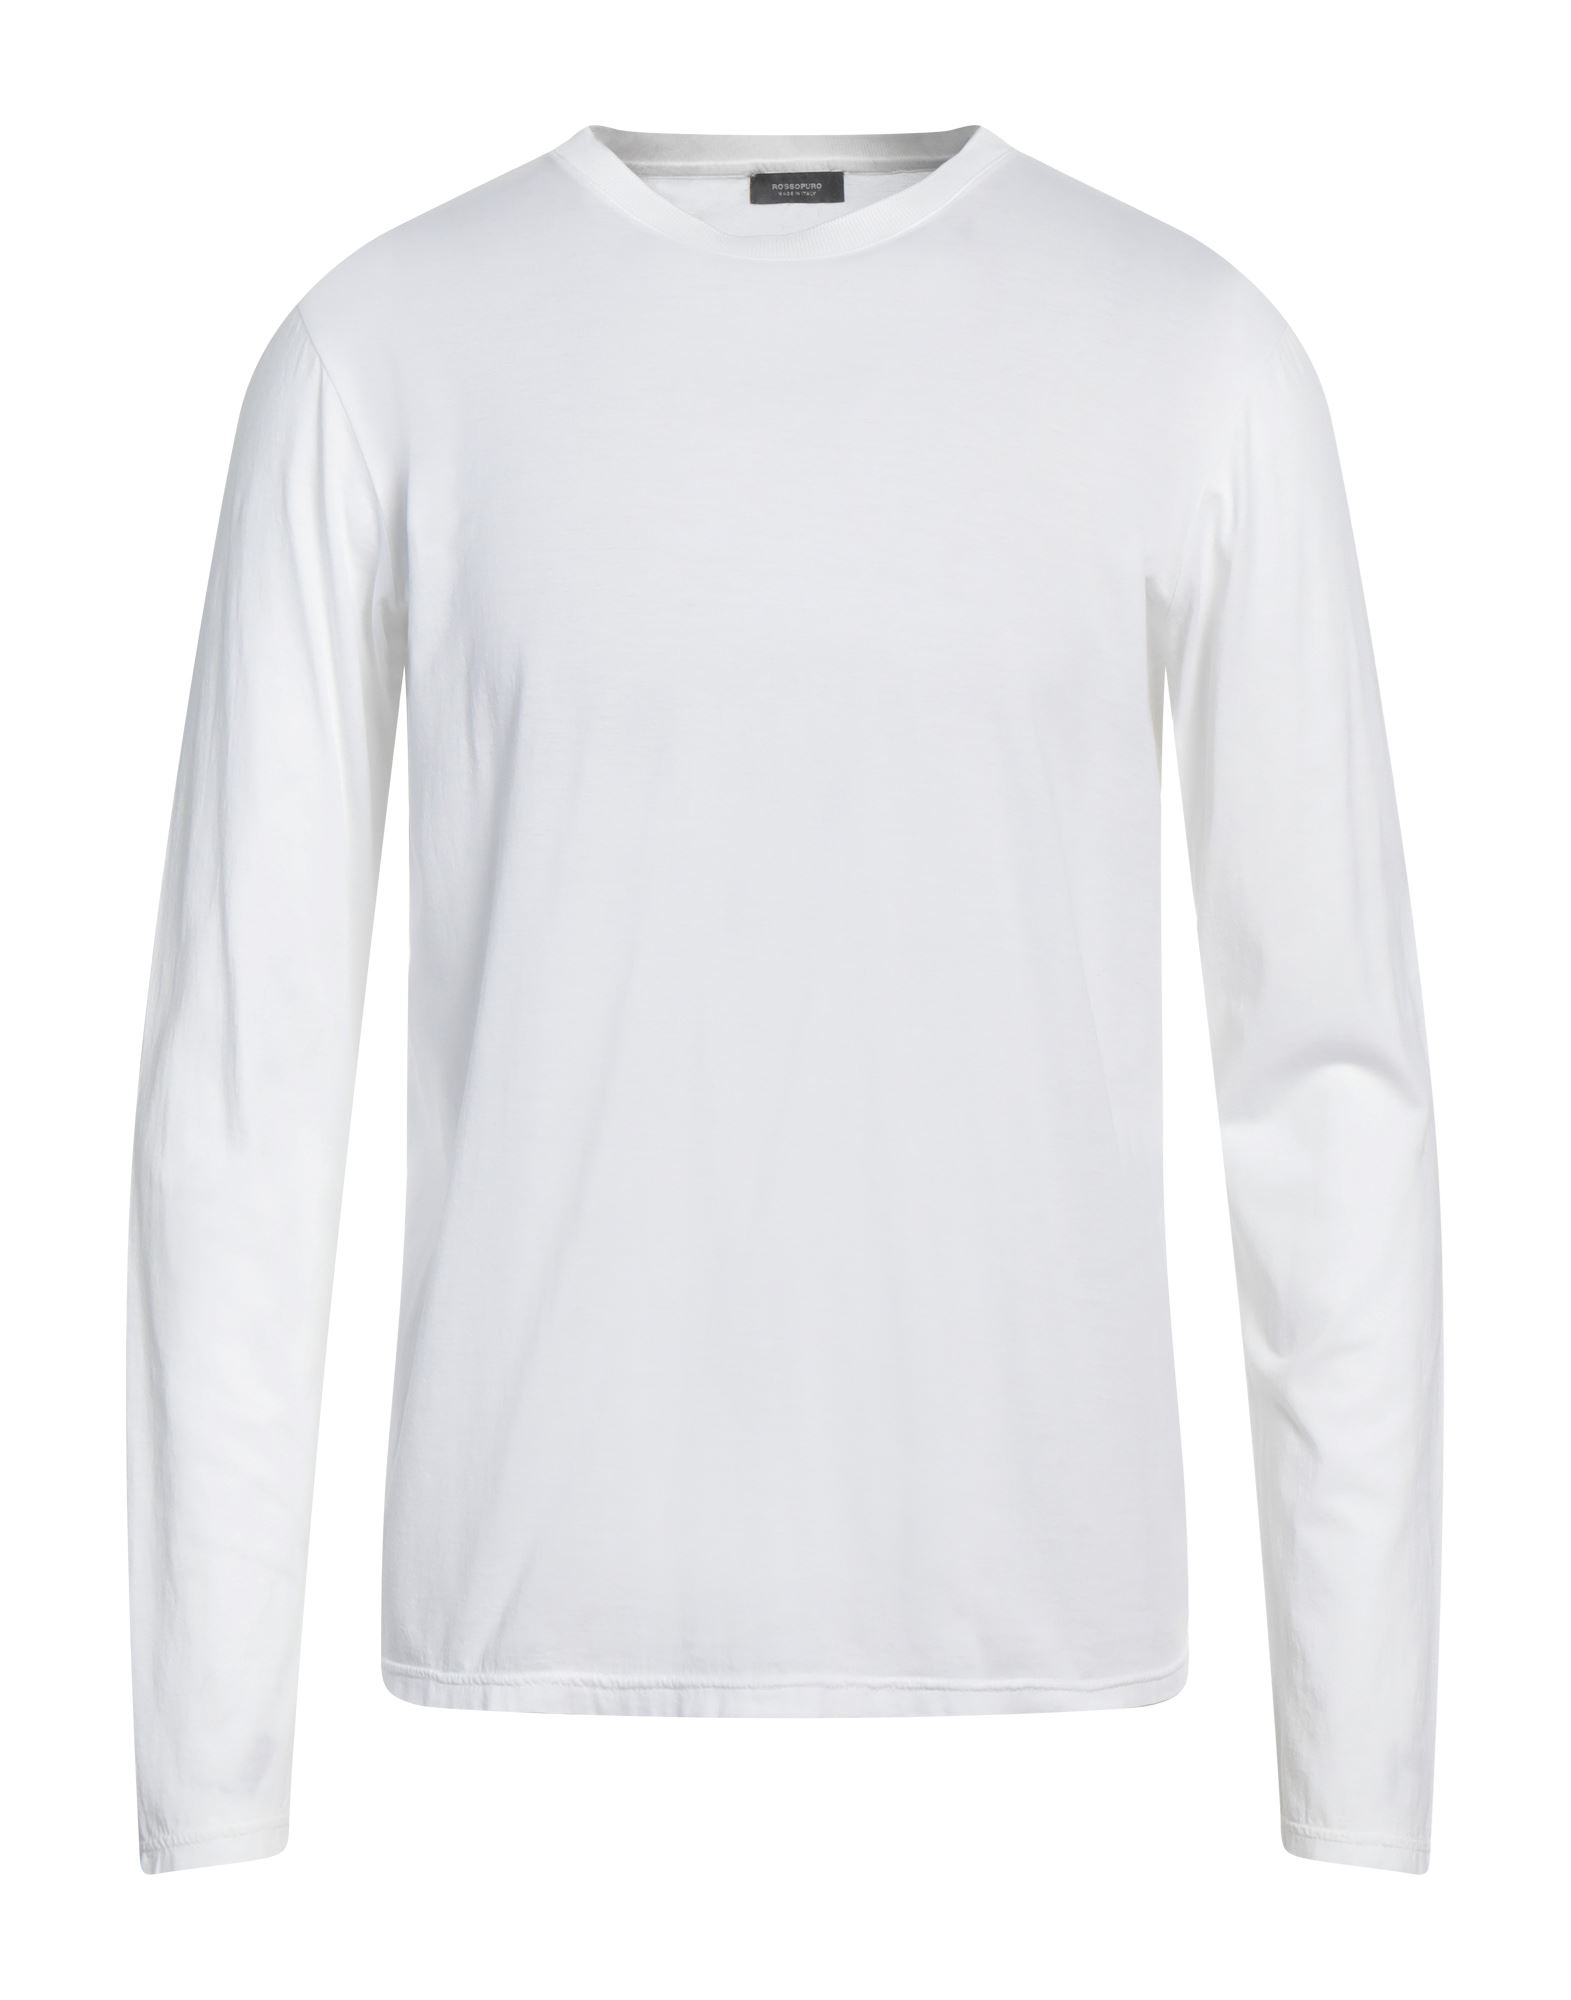 ROSSOPURO T-shirts Herren Weiß von ROSSOPURO